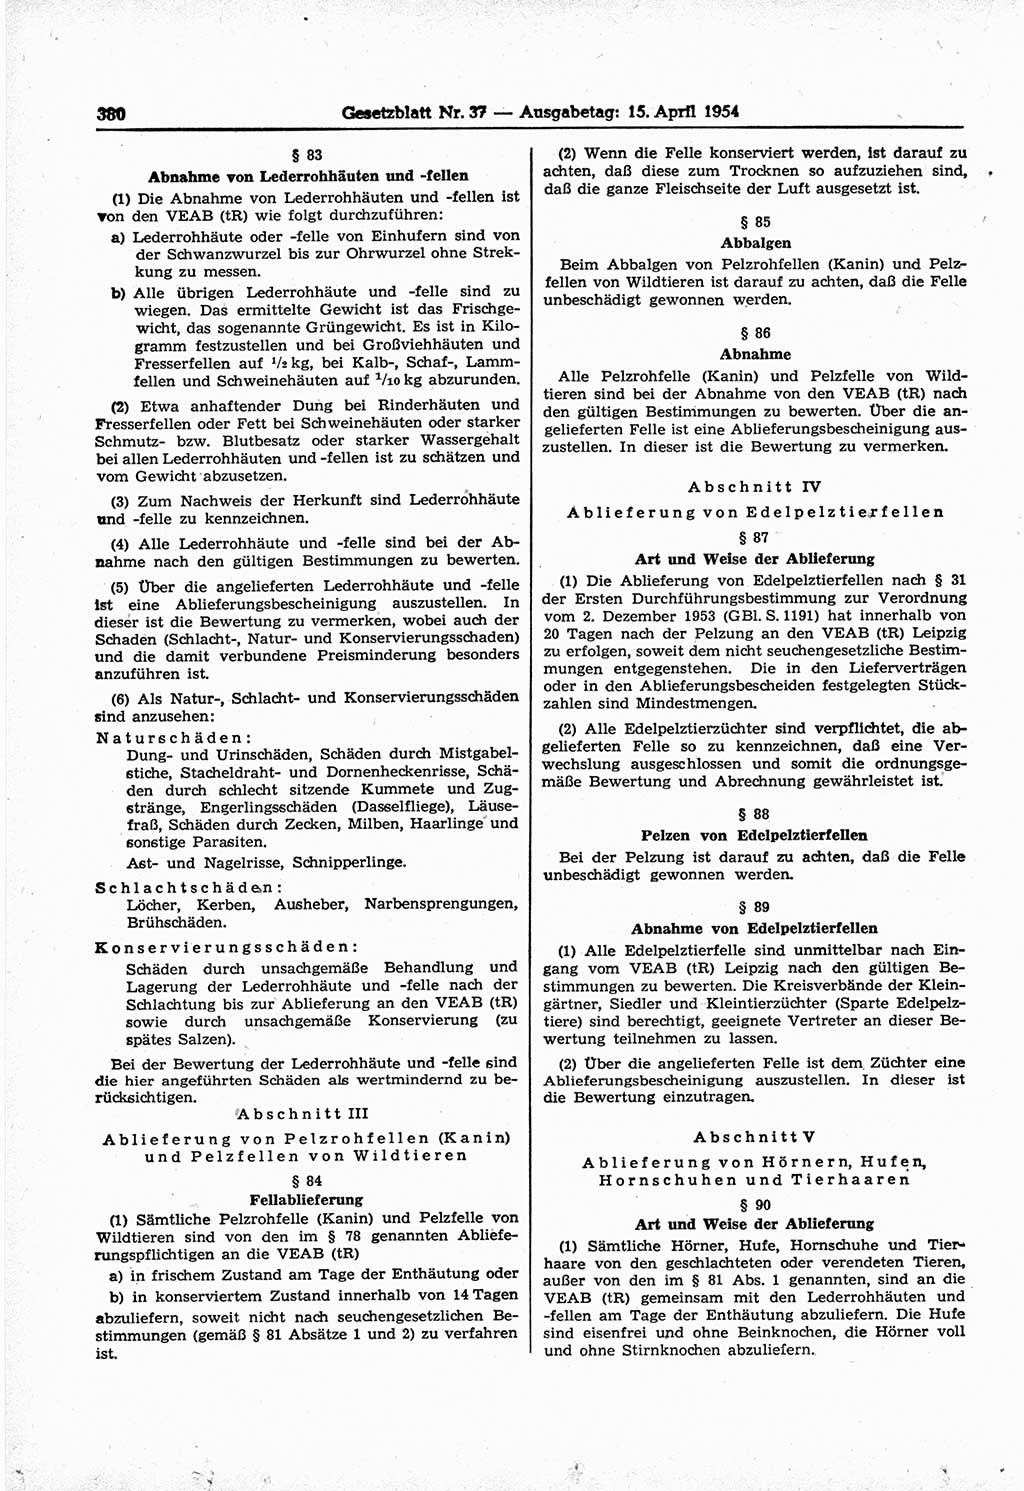 Gesetzblatt (GBl.) der Deutschen Demokratischen Republik (DDR) 1954, Seite 380 (GBl. DDR 1954, S. 380)